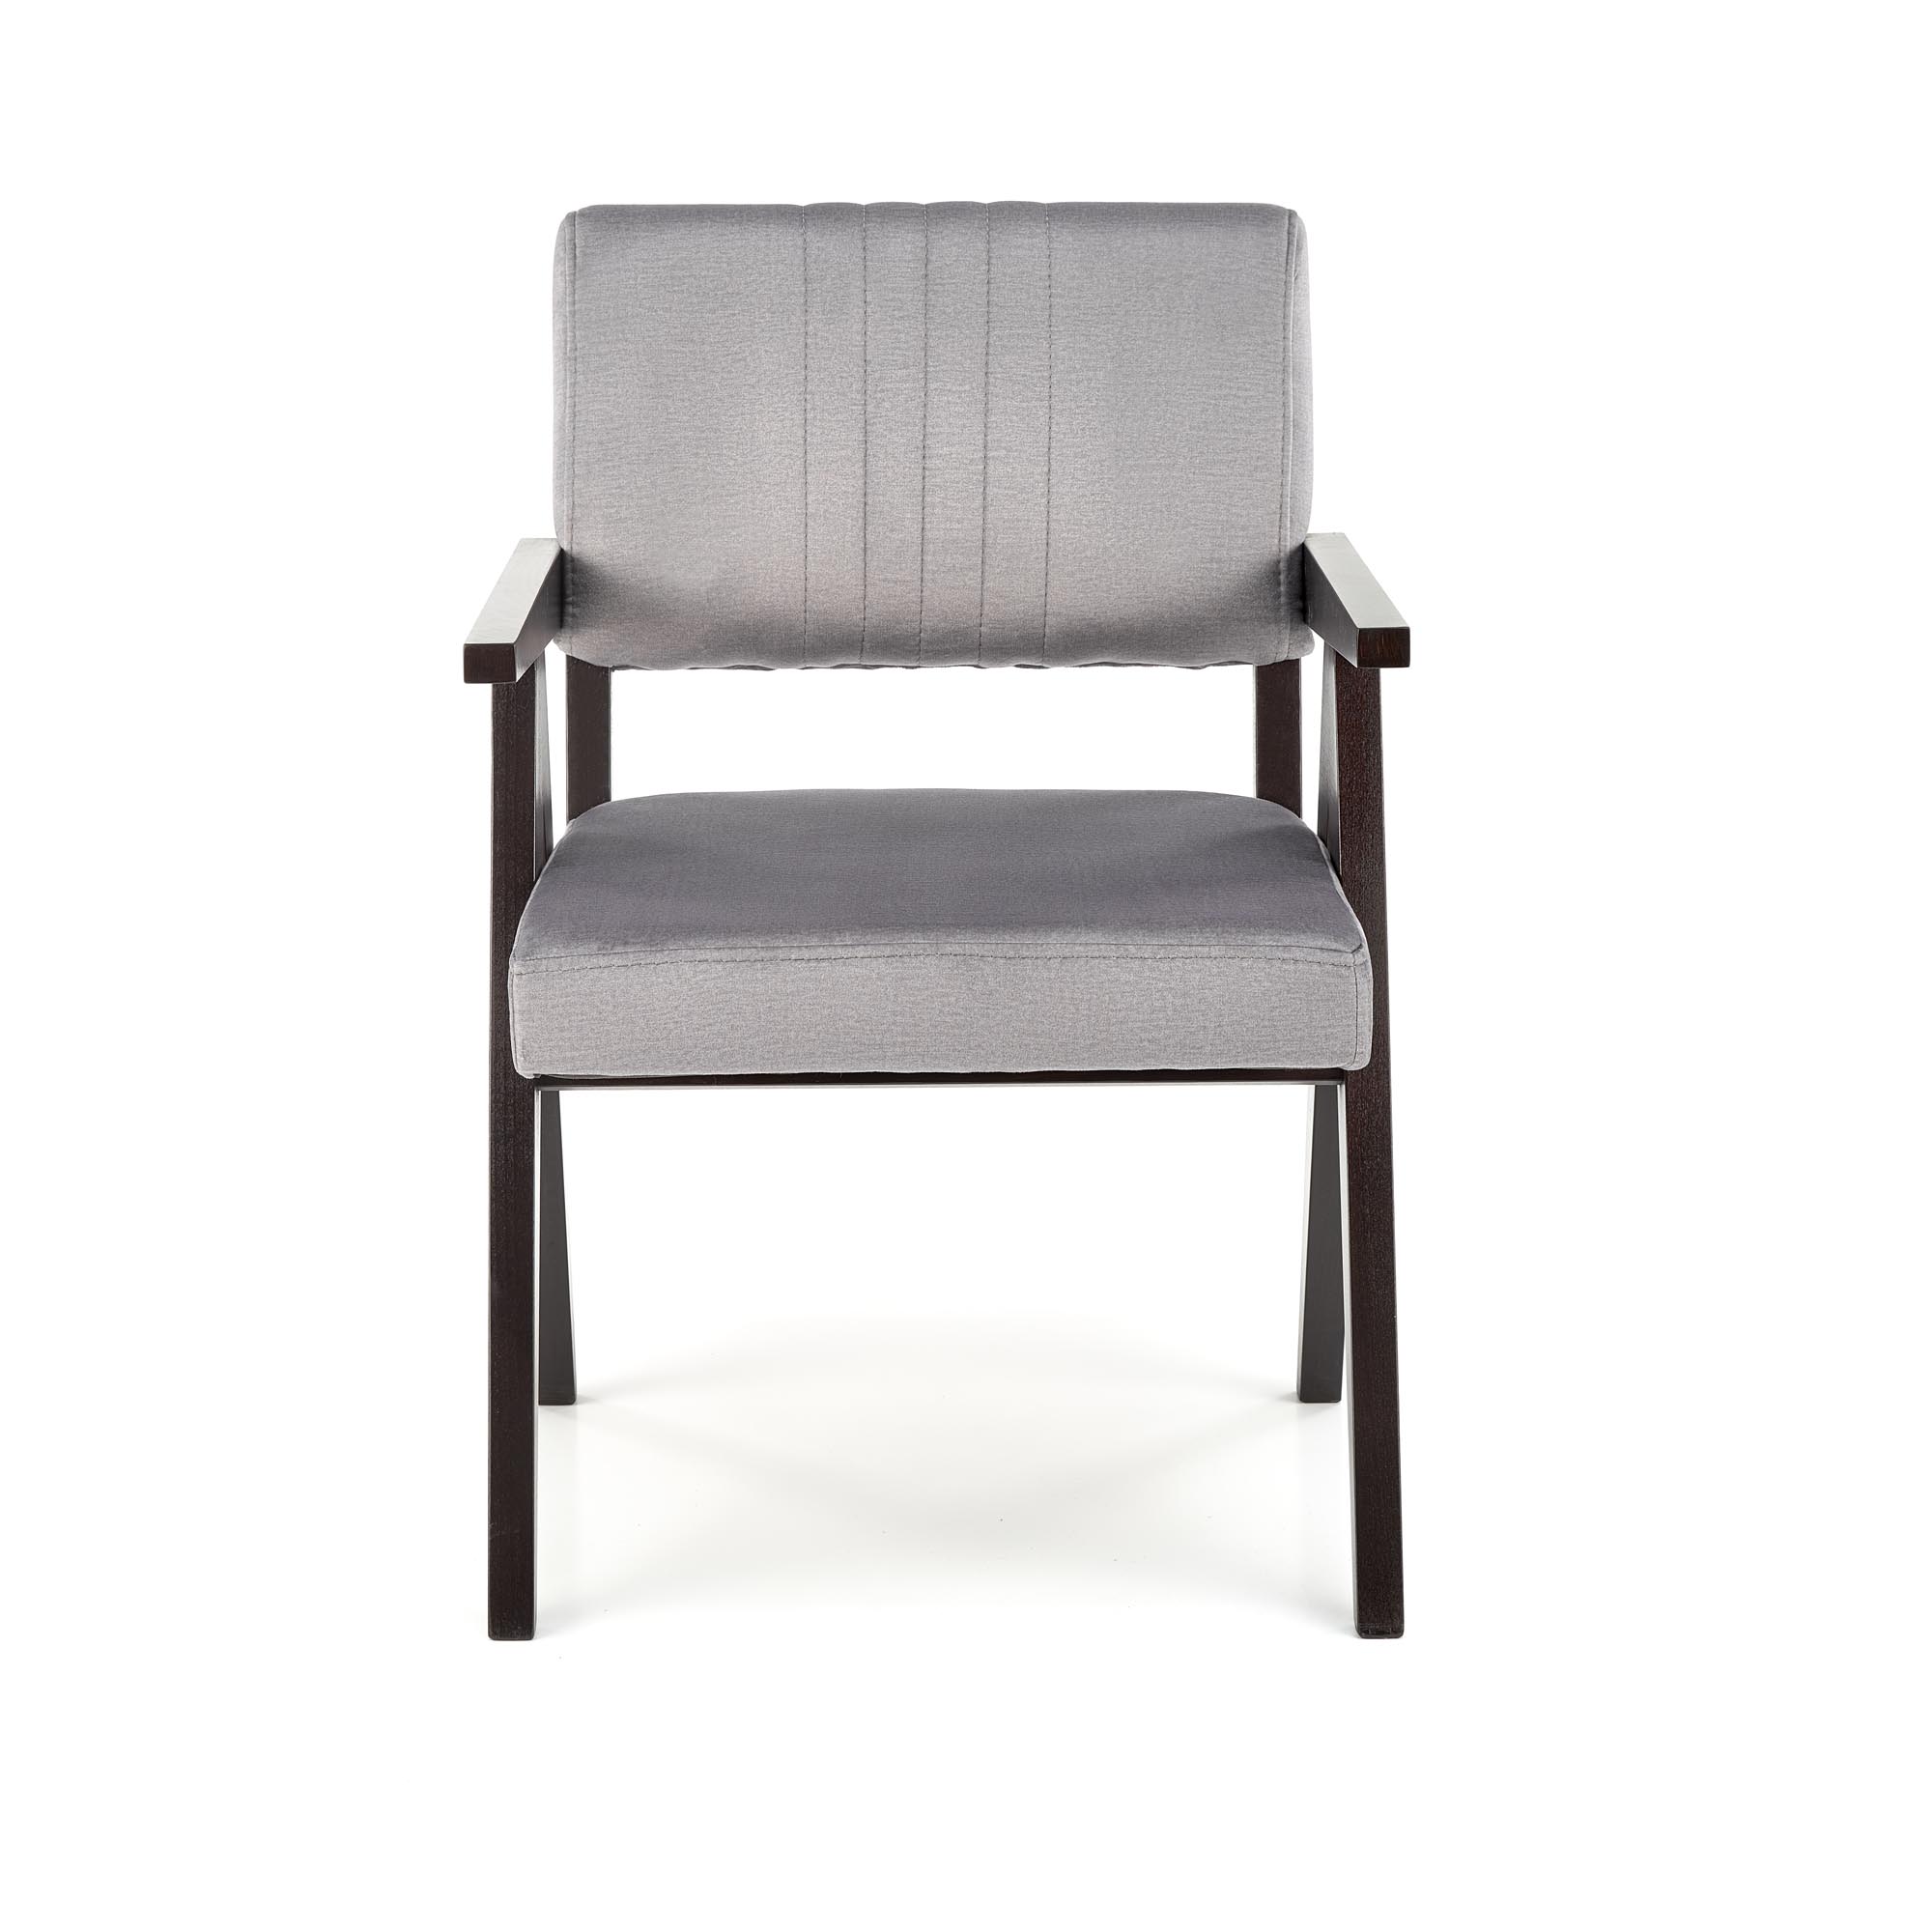 Krzesło tapicerowane z podłokietnikami Memory - heban / popiel krzesło tapicerowane z podłokietnikami memory - heban / popiel